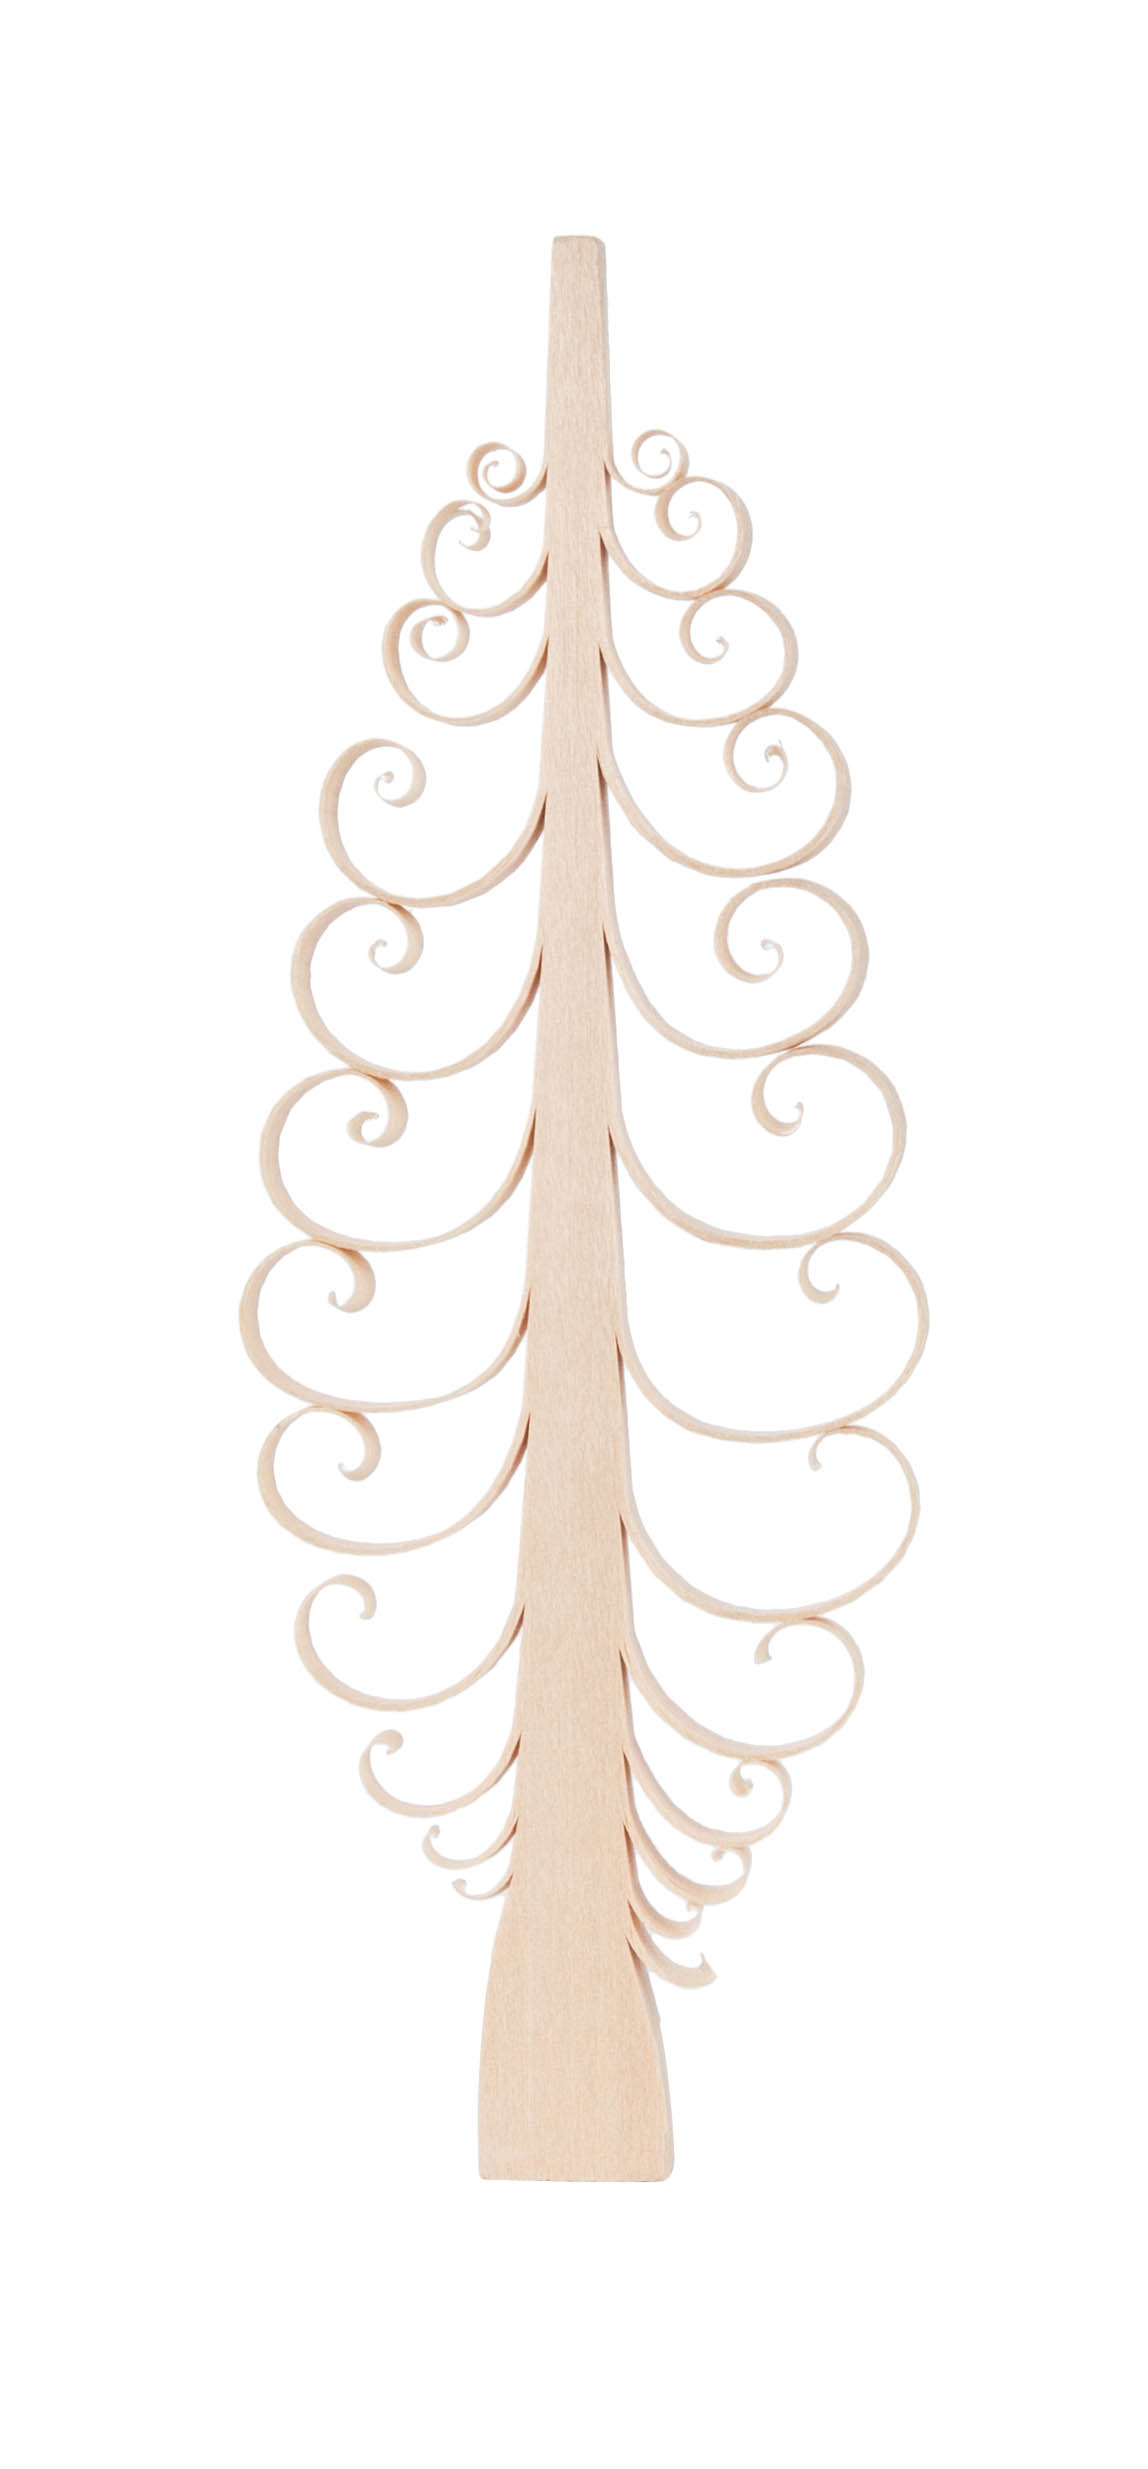 Spanbaum flach natur, 15cm  